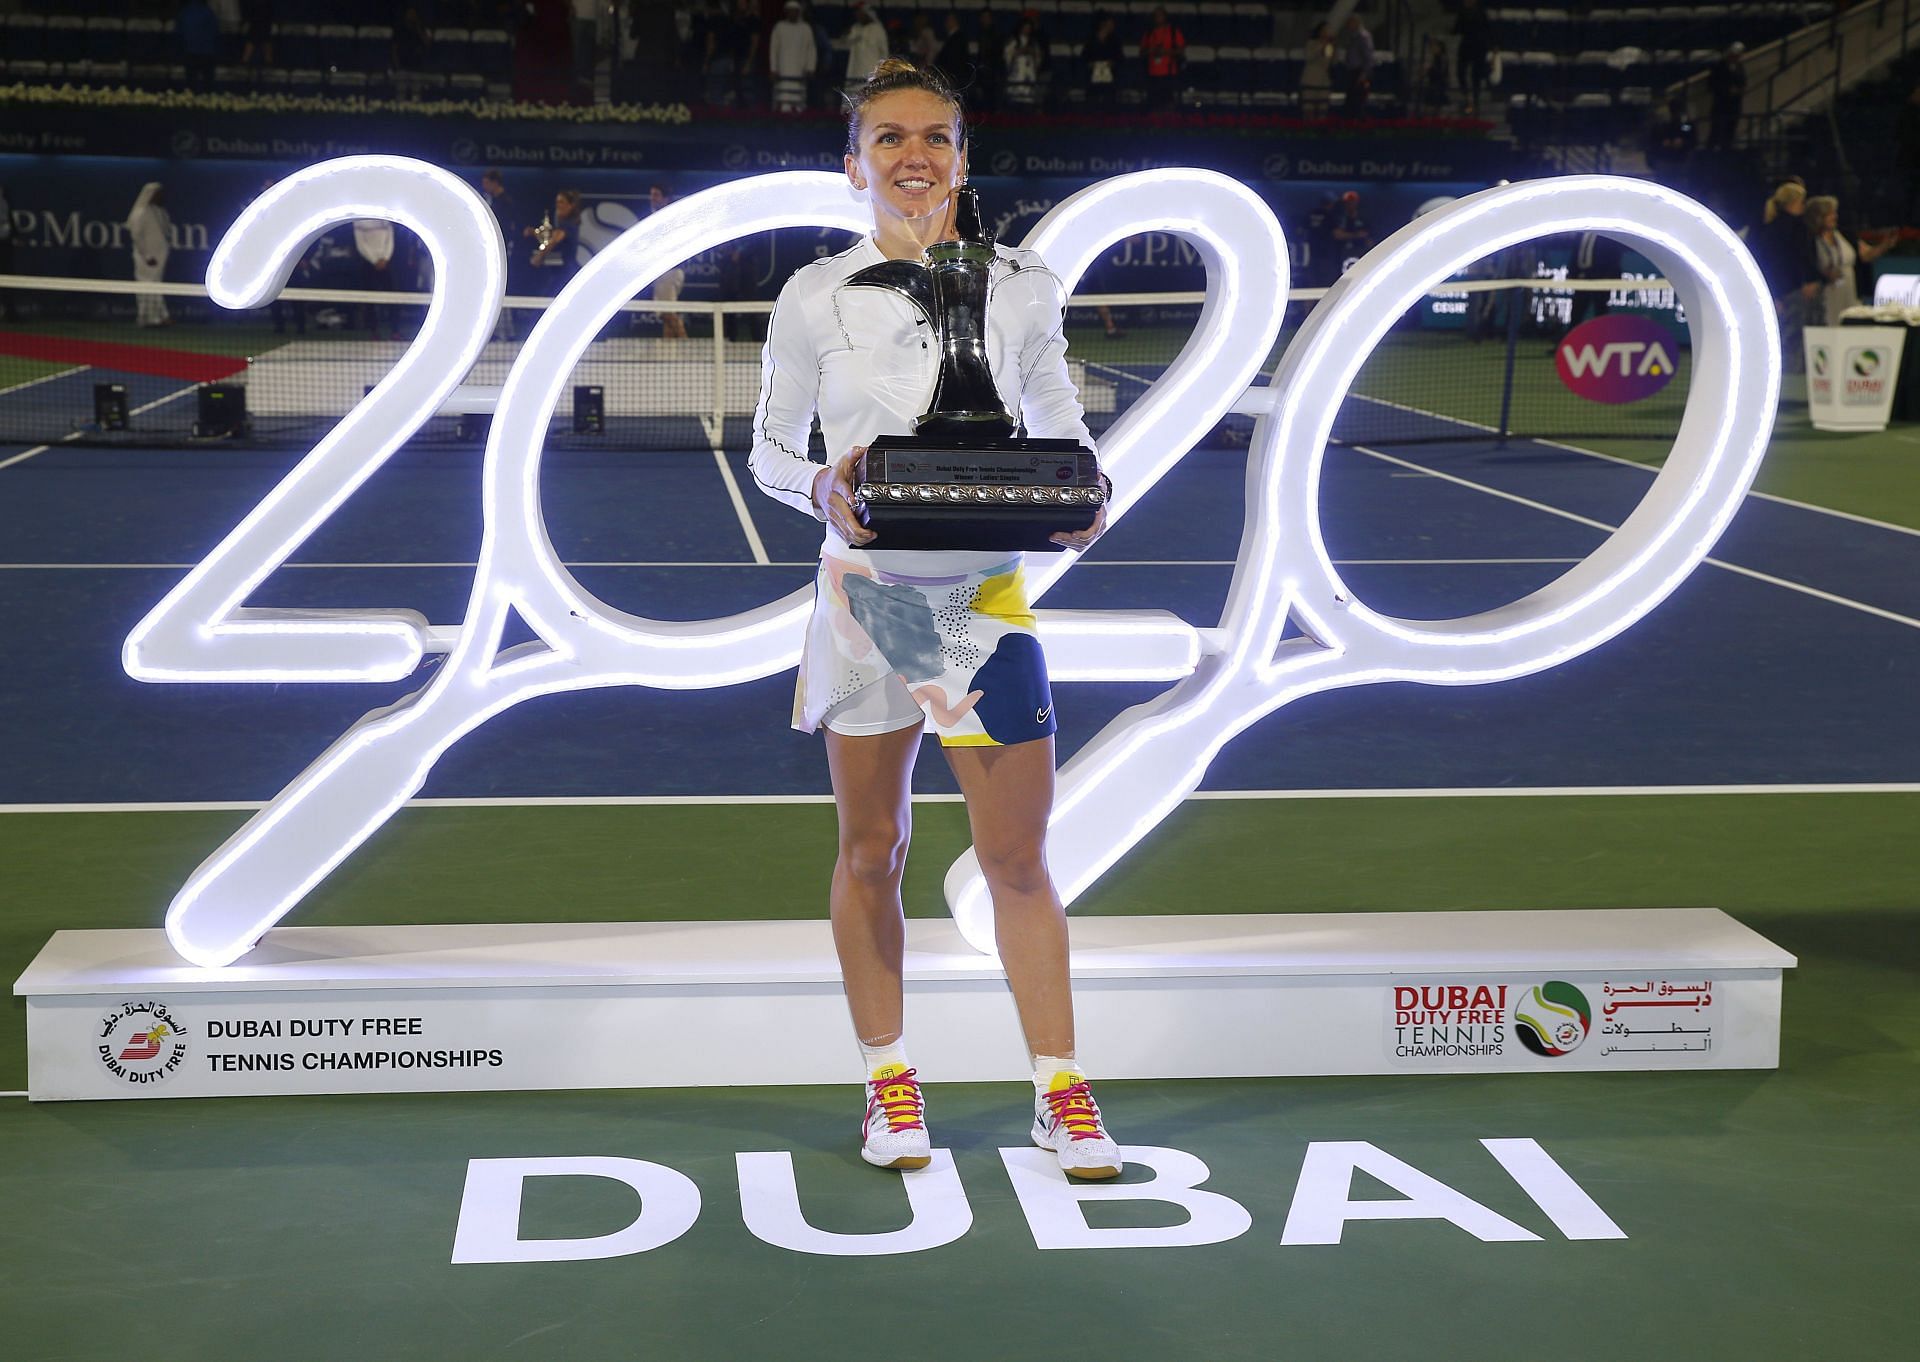 Dubai Open Schedule 2022: Women's Quarterfinal Matches & Order of Play